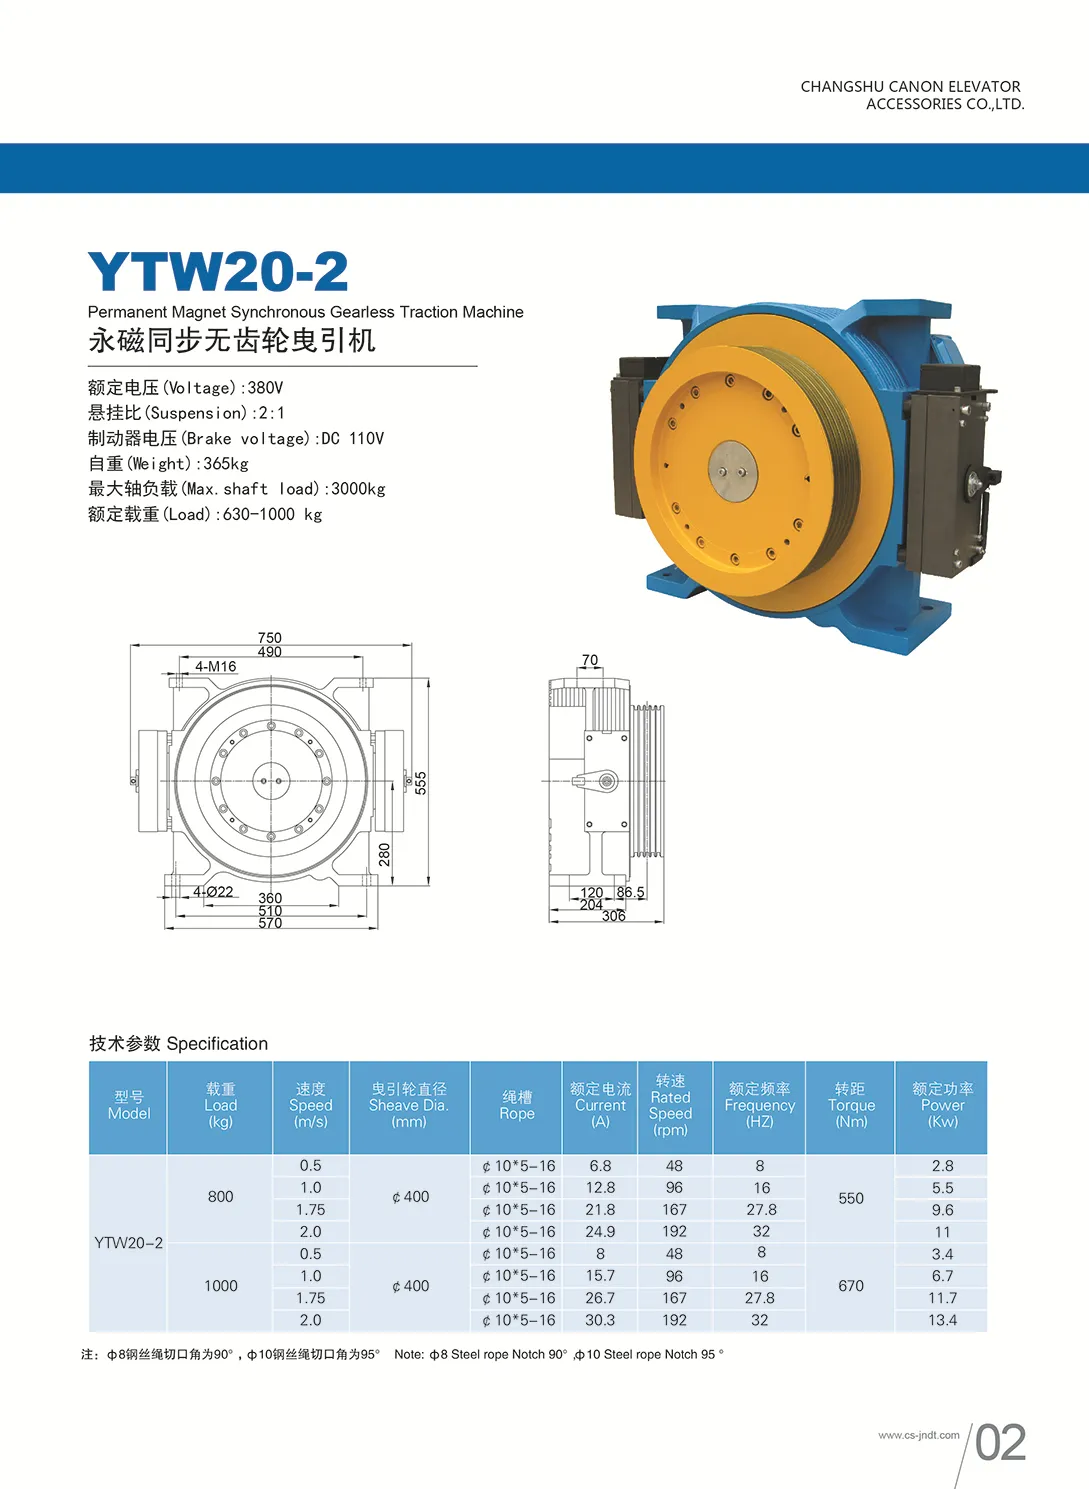 Elevador da peça principal elevador ímã permanente síncrono gearless modelo de máquina de tração do motor YTW20-2